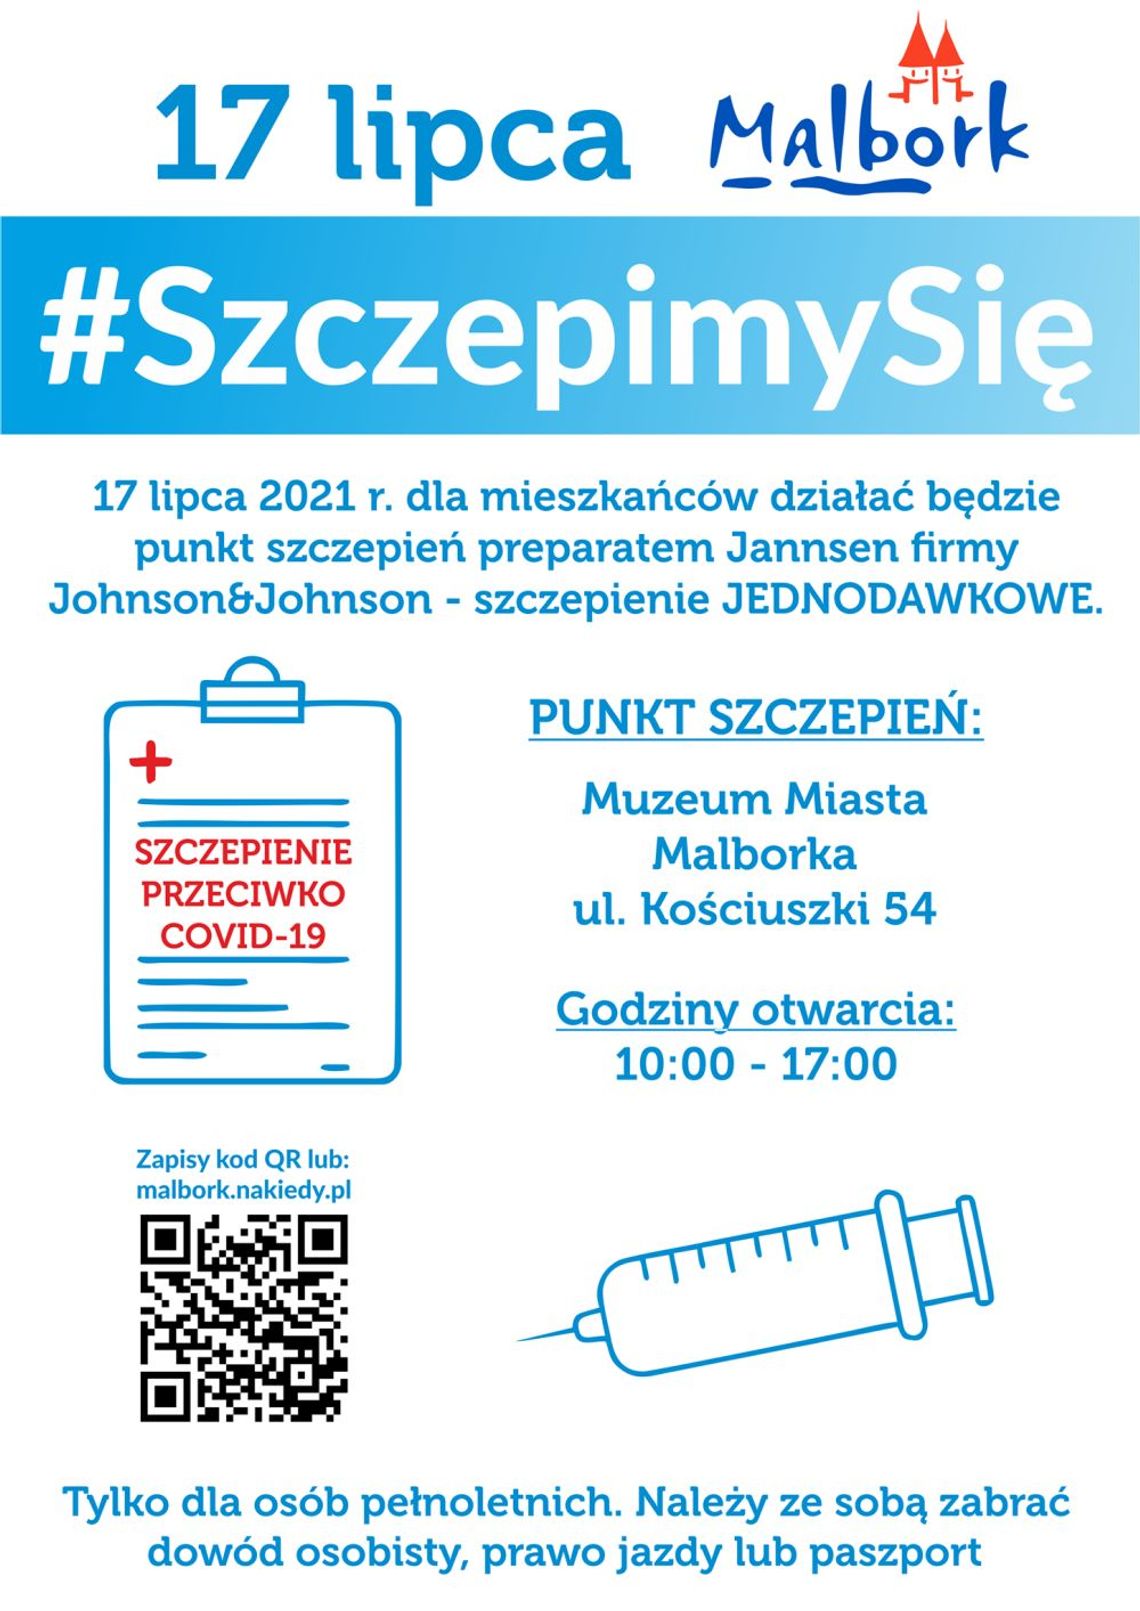 W sobotę w Muzeum Miasta Malborku możliwość szczepienia J&J i spisania się